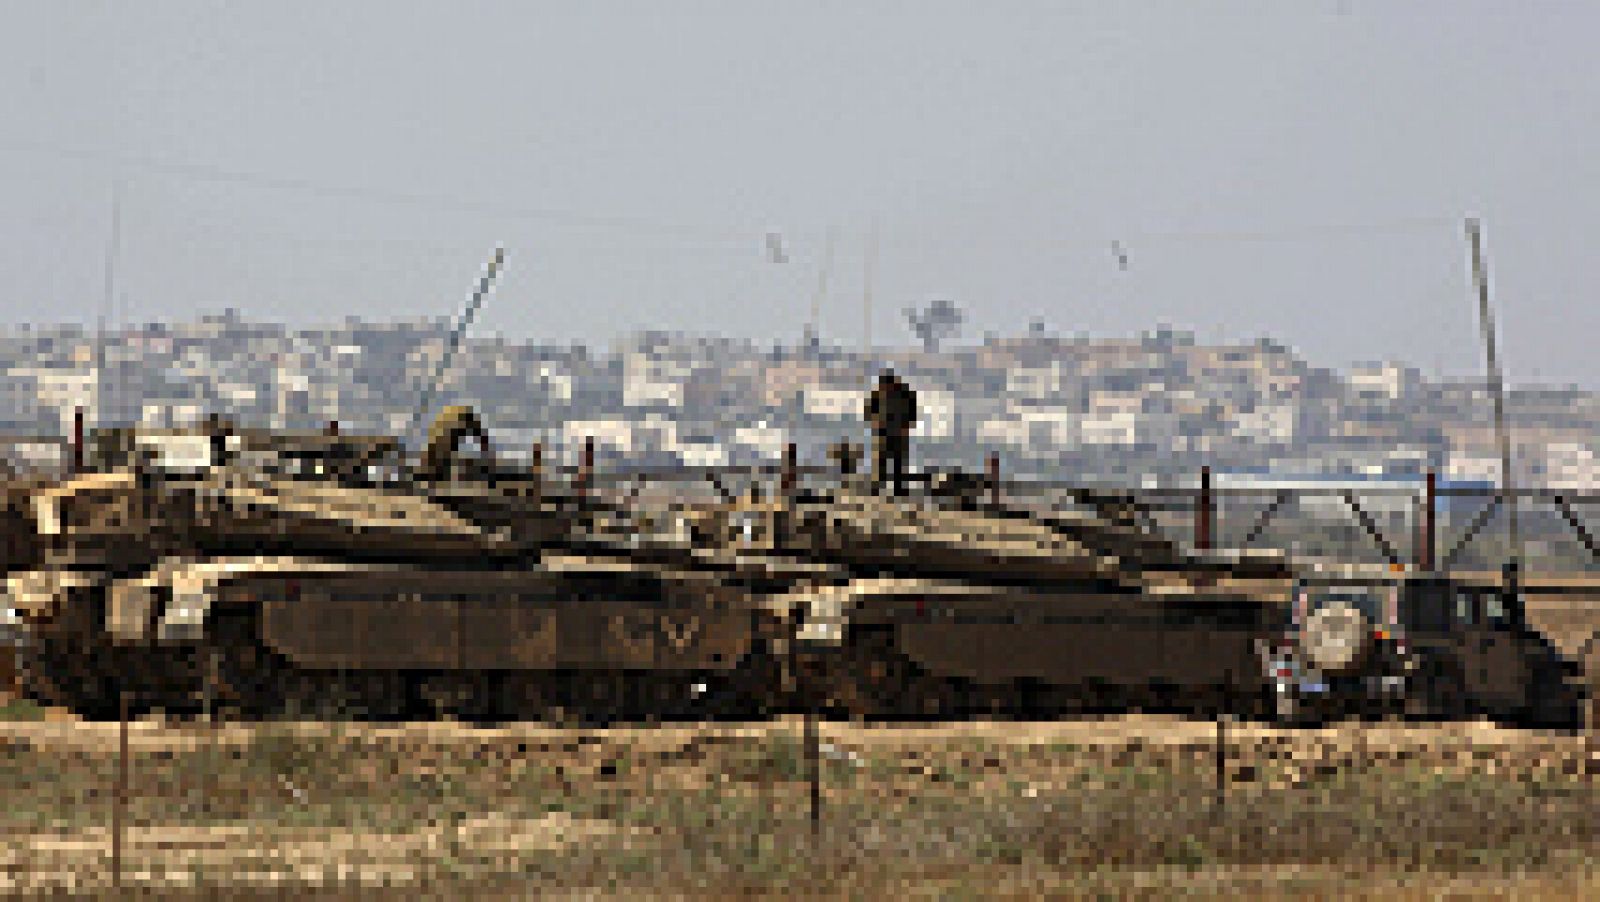  El Ejército de Israel ha comenzado este jueves a movilizar fuerzas en los alrededores de la Franja de Gaza tras el lanzamiento de varios cohetes. Entre los preparativos que desarrolla el Ejército israelí figura el despliegue de fuerzas de artillería que se entrenaban en otras regiones y han sido transferidas a las inmediaciones de Gaza.